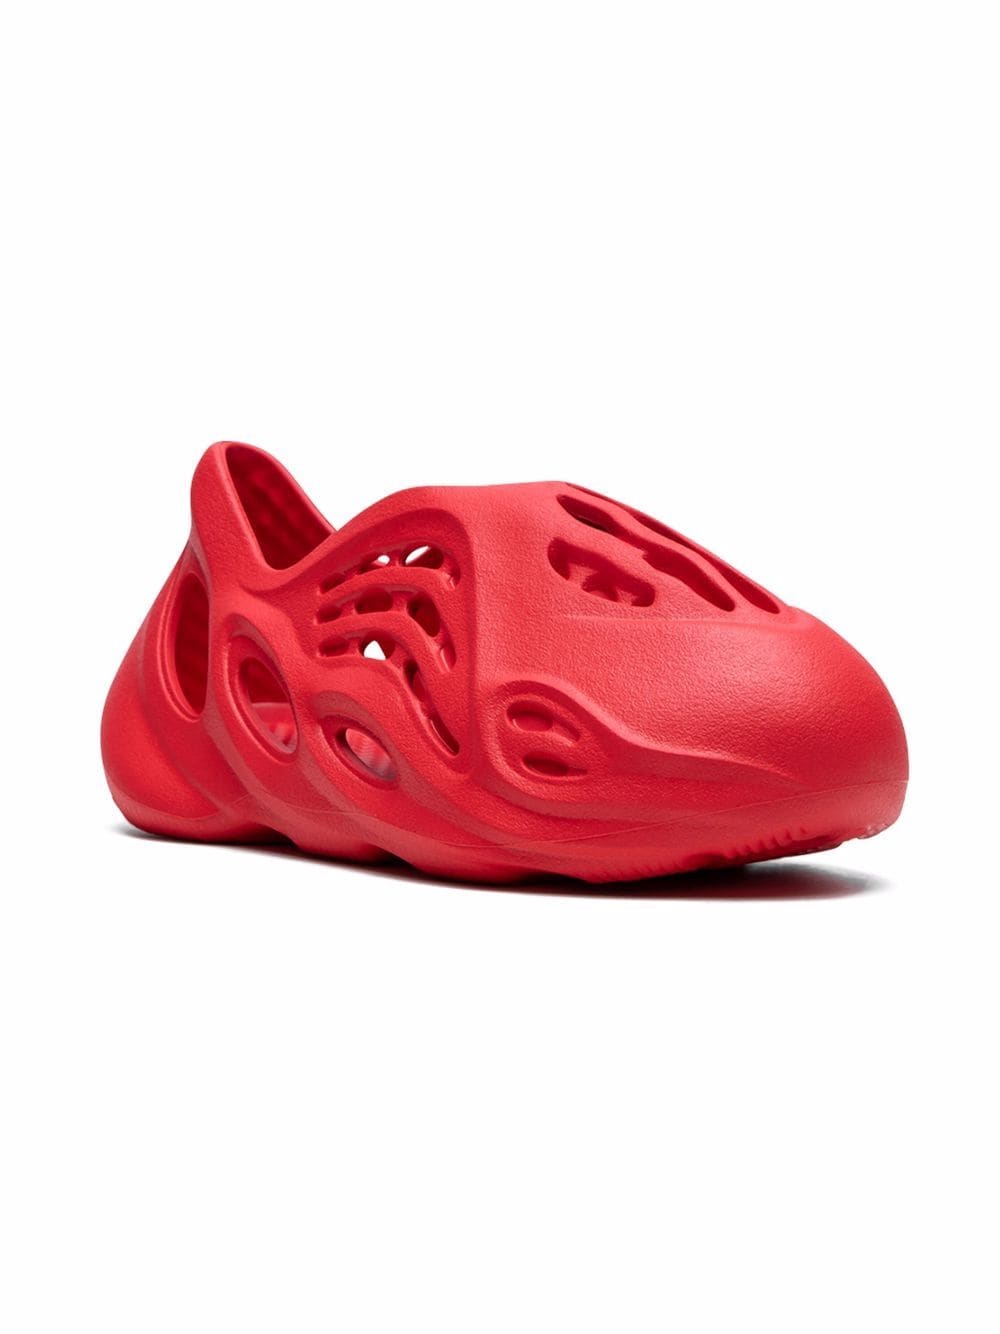 Adidas Yeezy Kids Foam Runner "Vermillion" sneakers - Red von Adidas Yeezy Kids